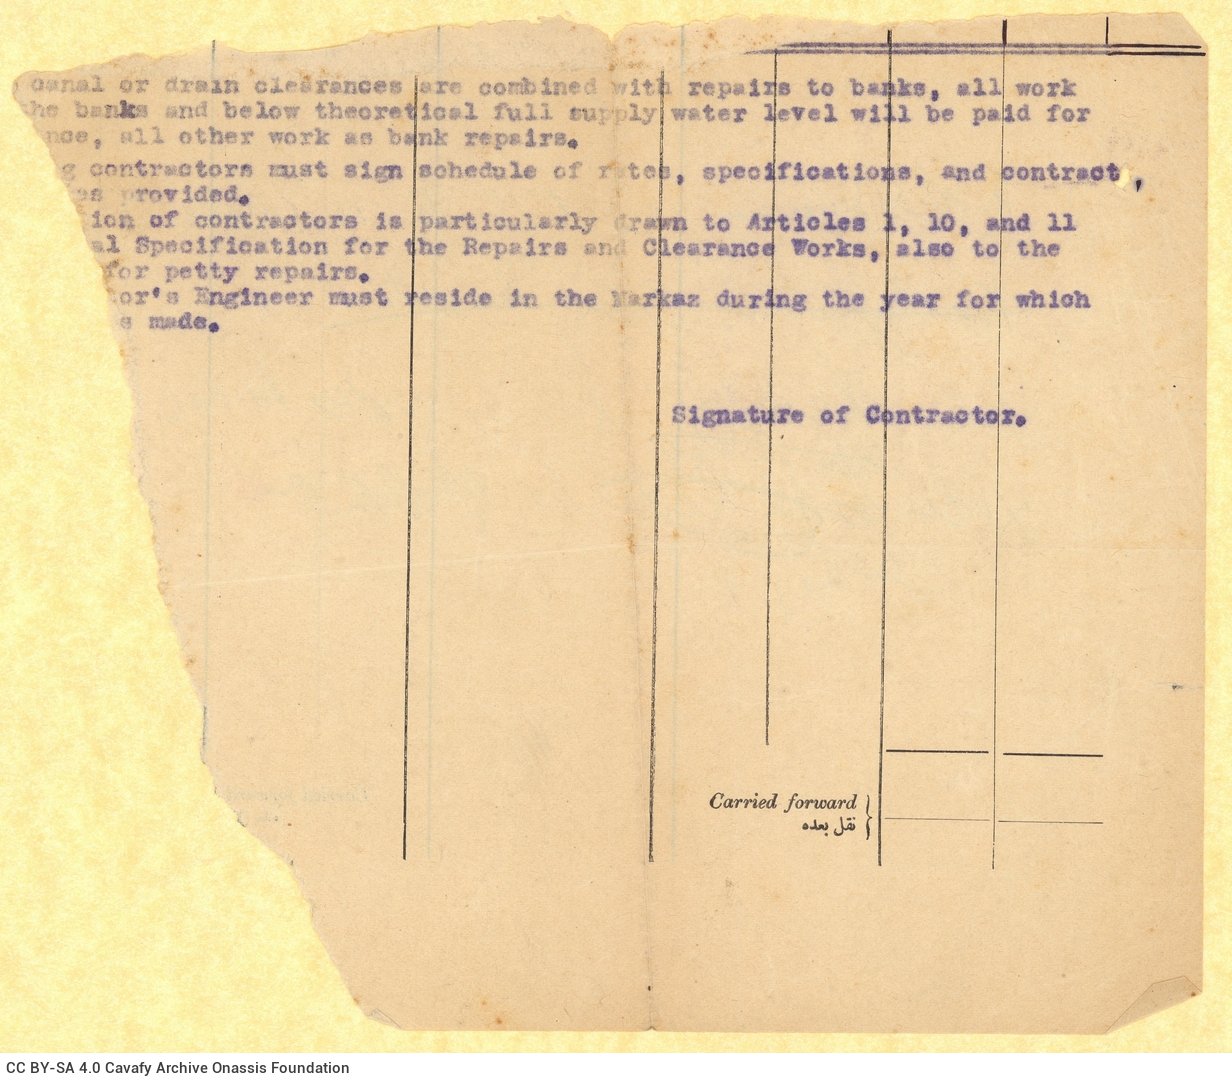 Χειρόγραφη σημείωση του Καβάφη στη μία όψη τμήματος έντυπου υπηρε�